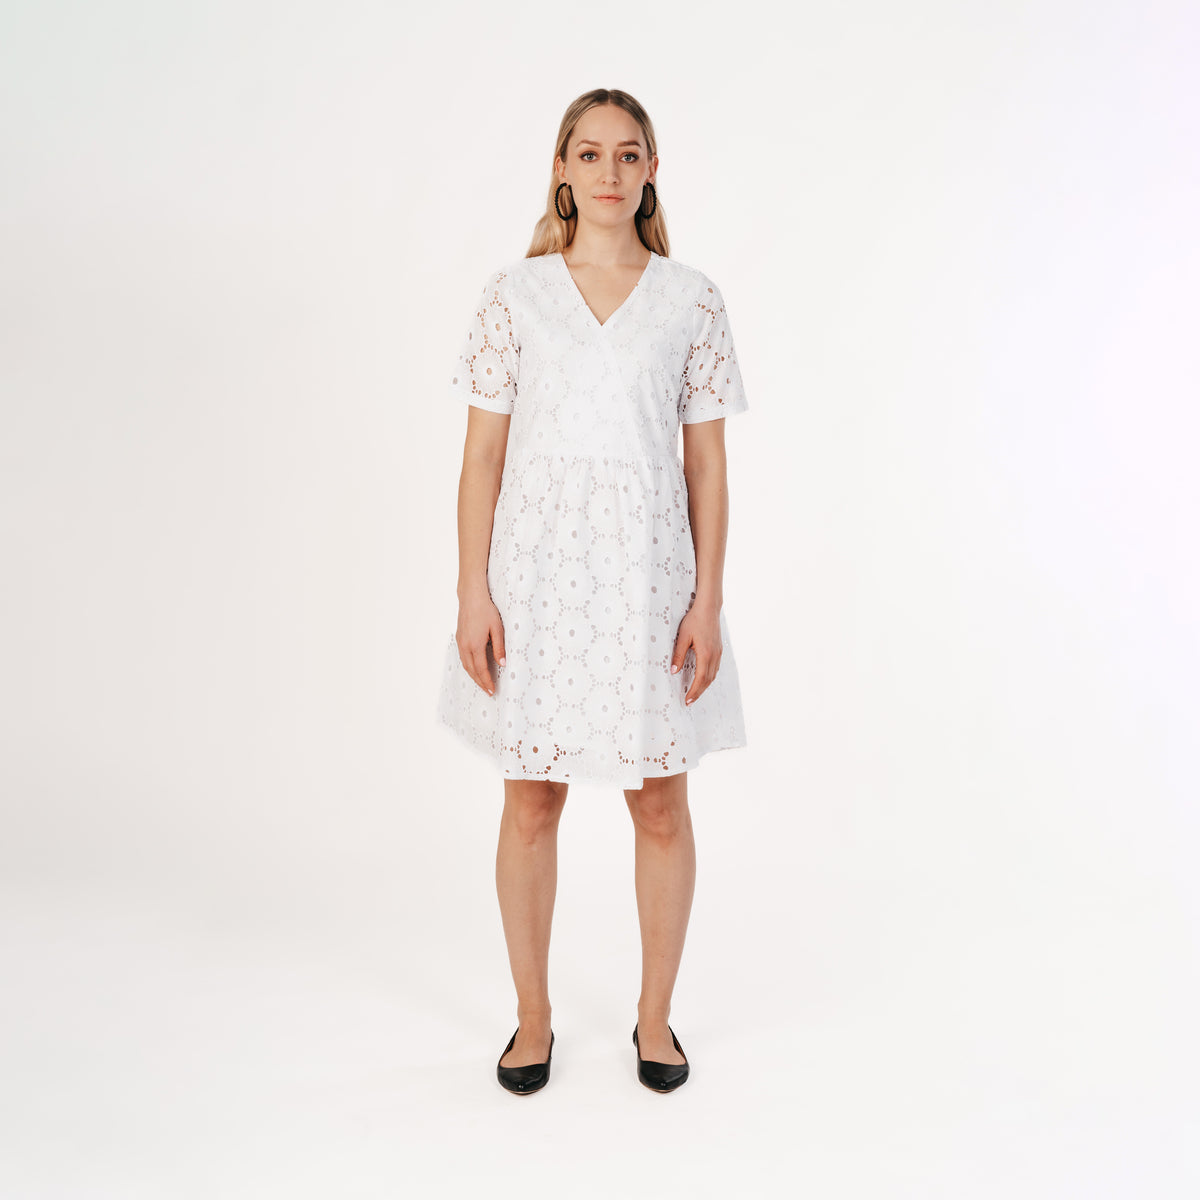 Nelli dress, white